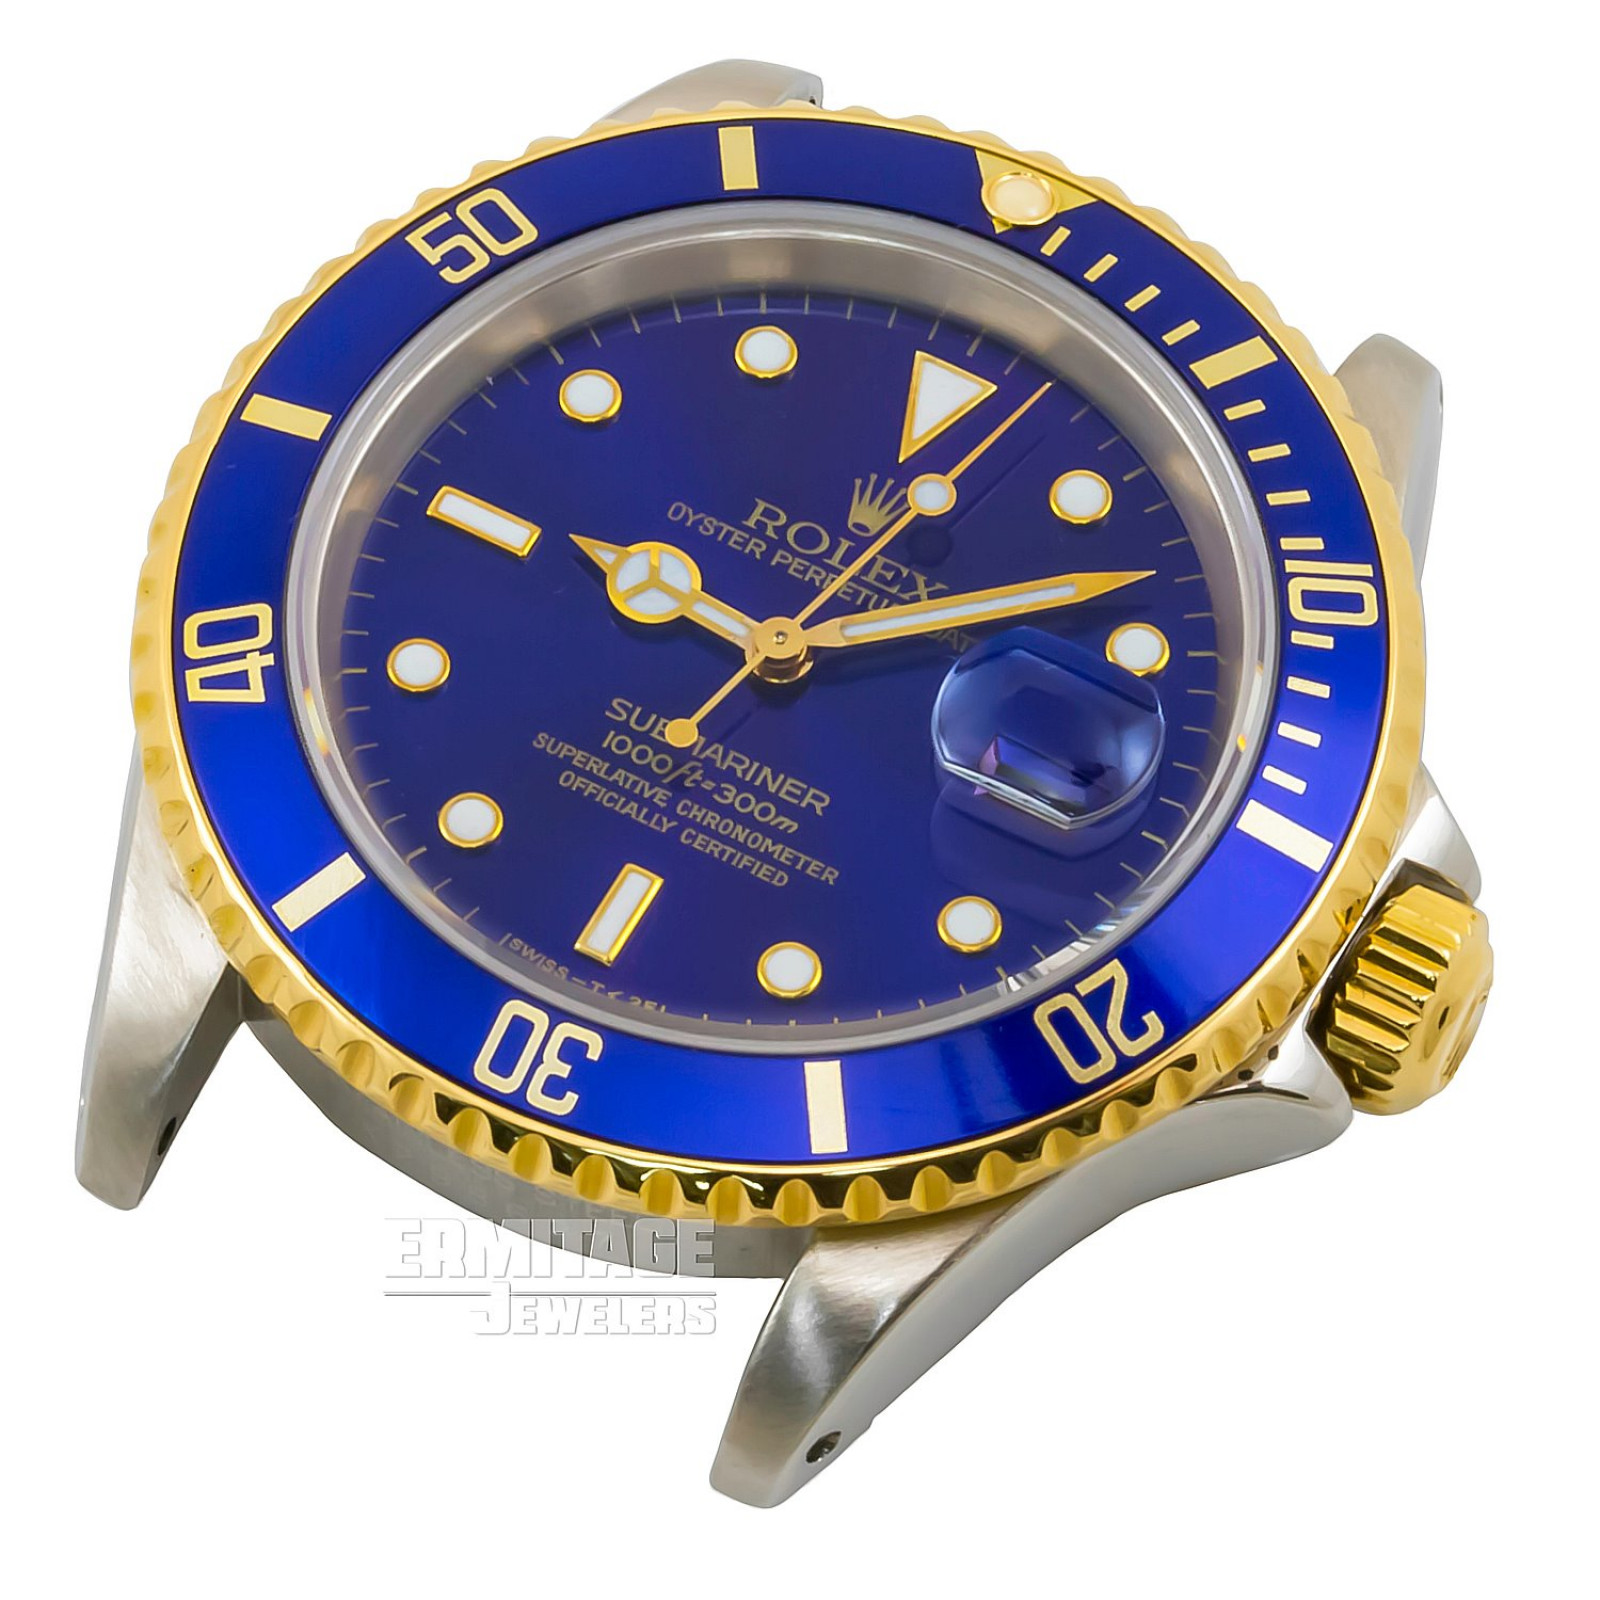 Rolex Submariner 16613 Blue Dial